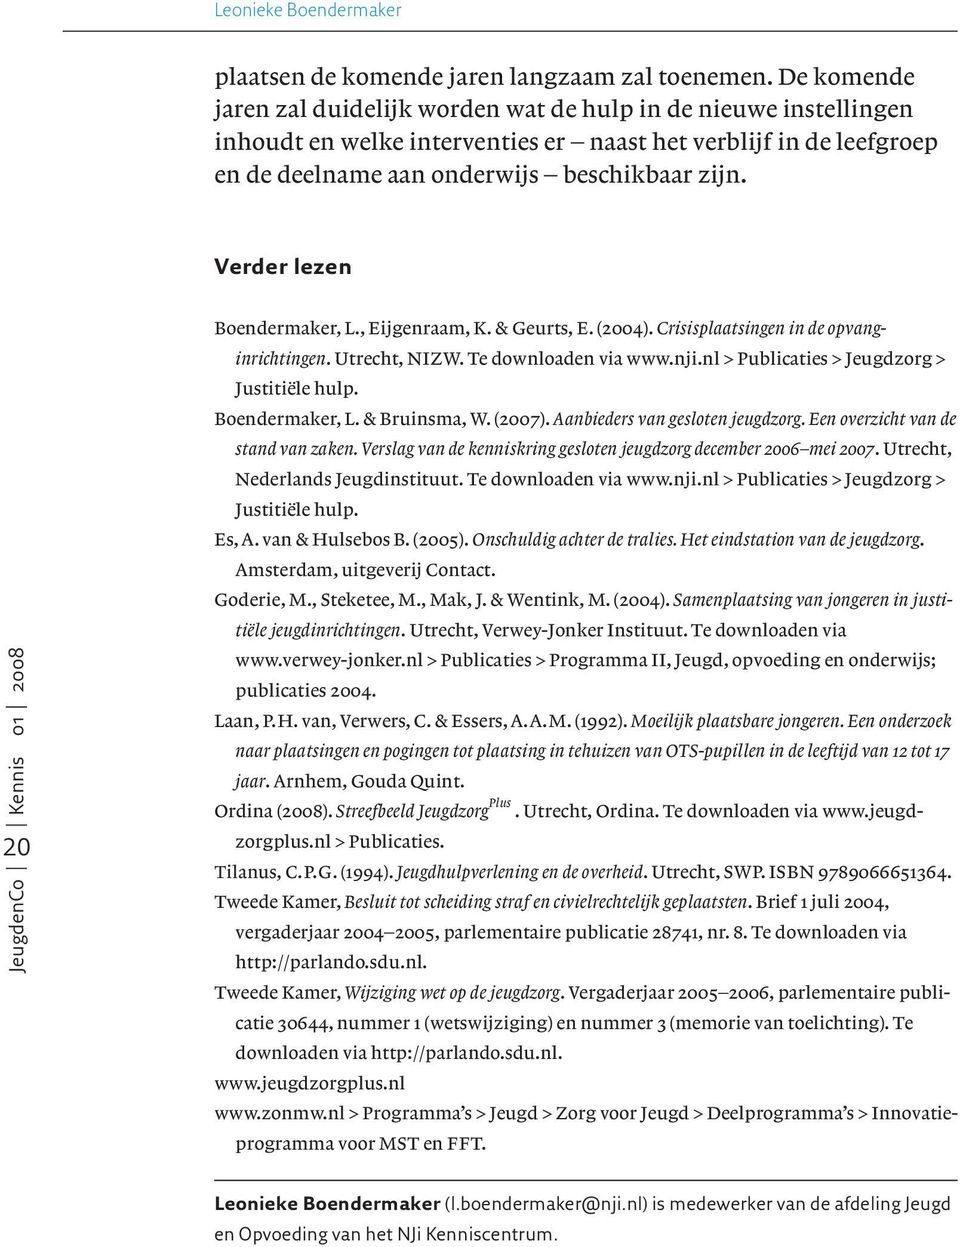 Verder lezen 20 Boendermaker, L., Eijgenraam, K. & Geurts, E. (2004). Crisisplaatsingen in de opvanginrichtingen. Utrecht, NIZW. Te downloaden via www.nji.